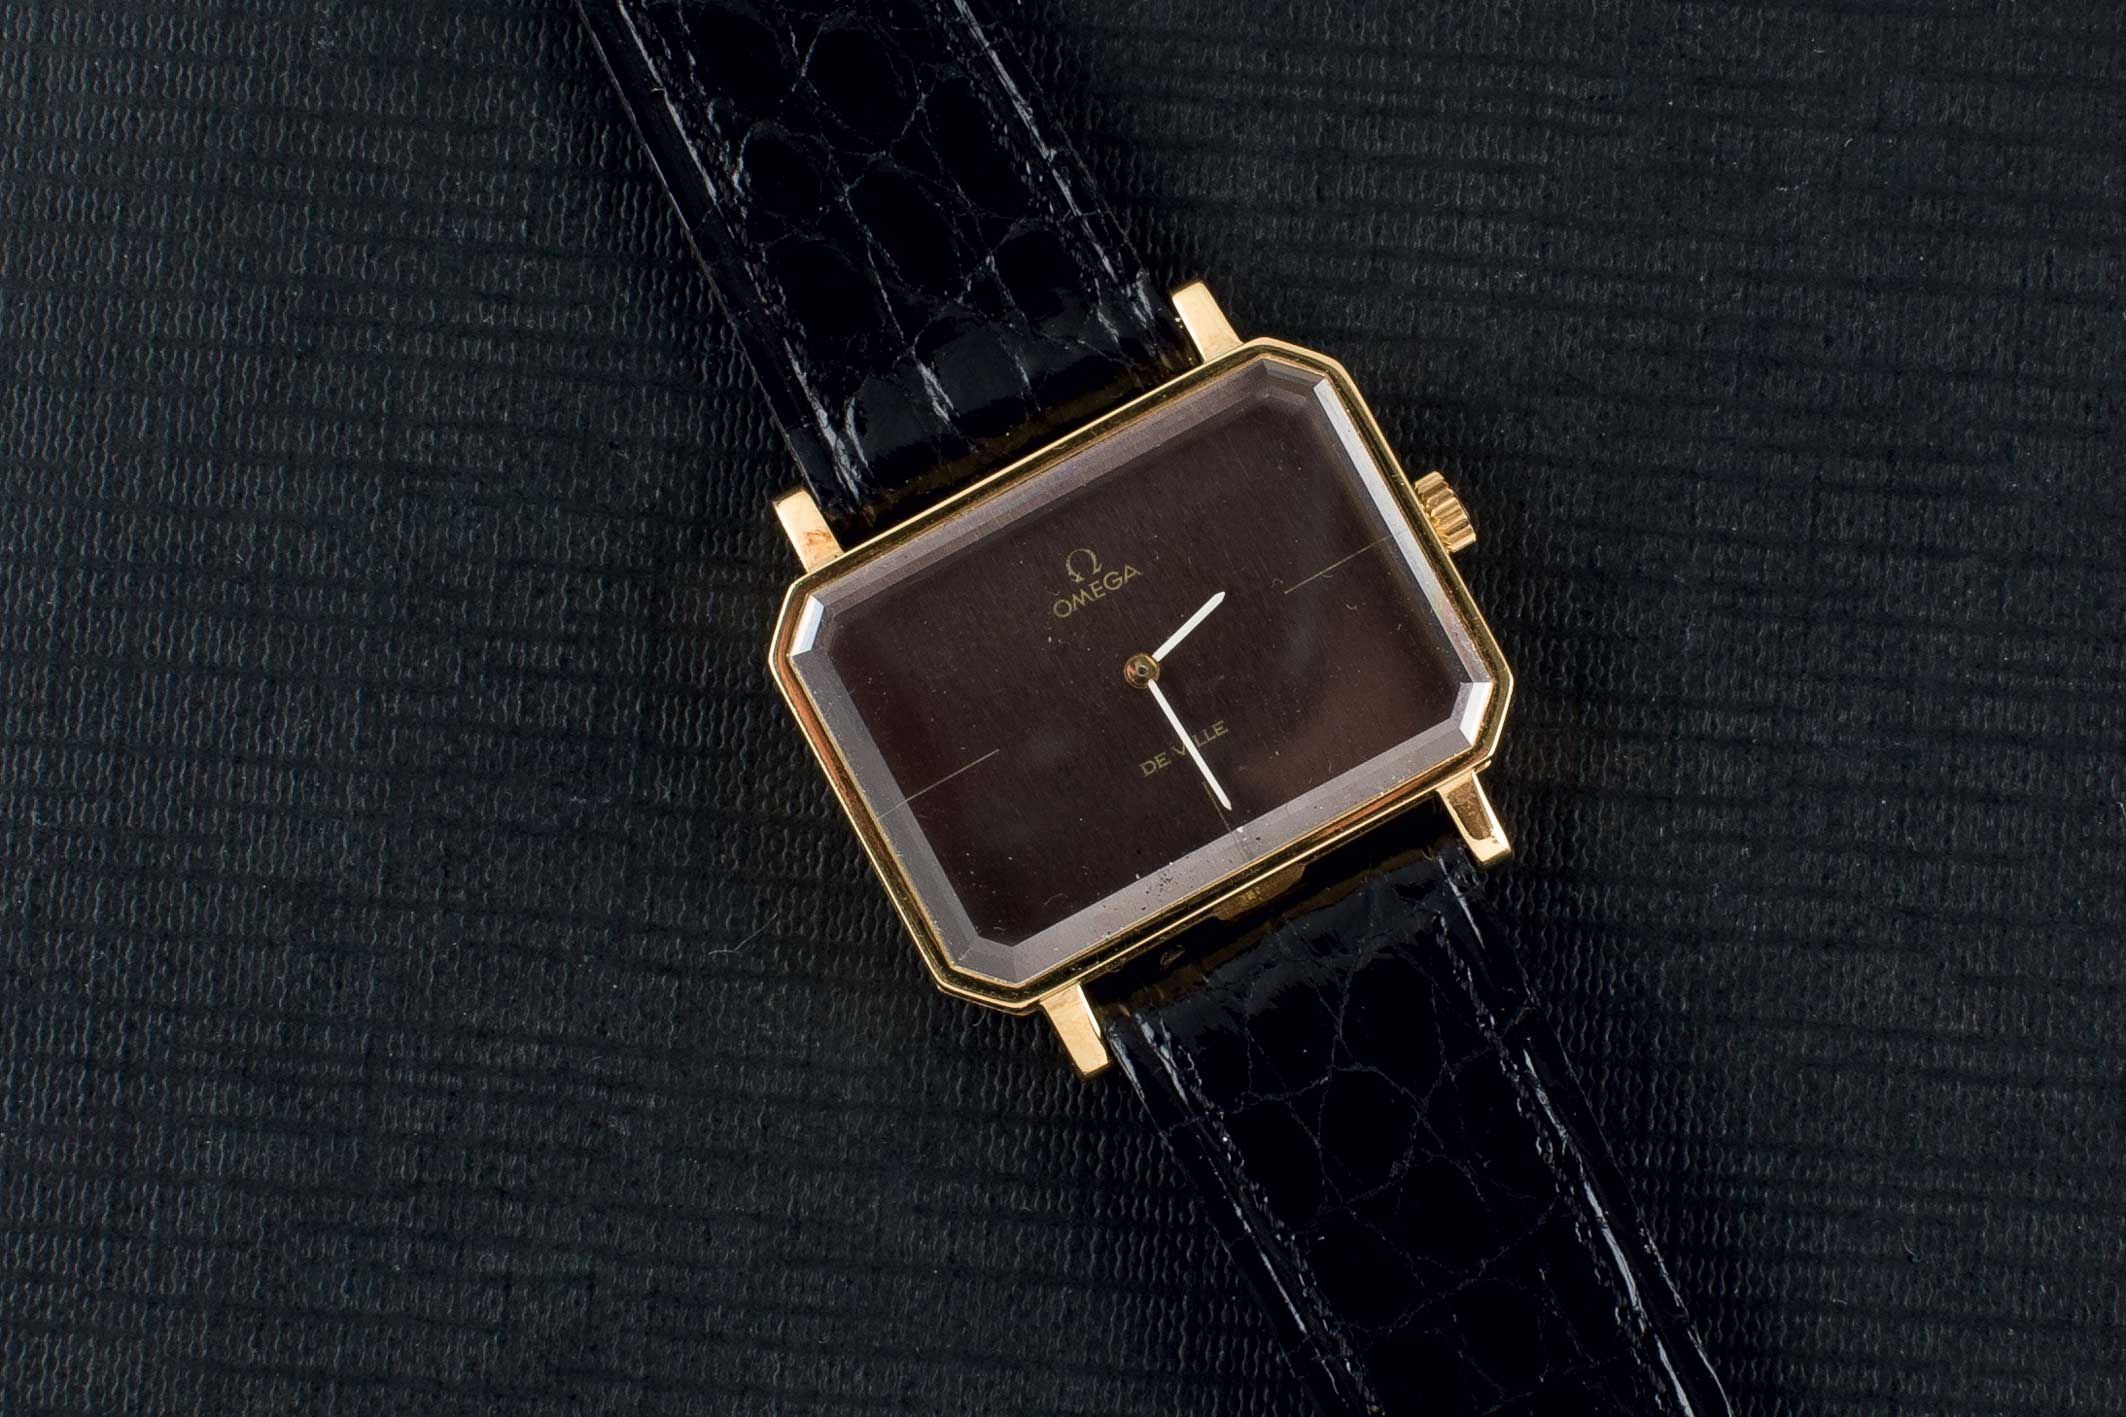 An Omega gold wrist watch. Reloj de pulsera para caballero marca OMEGA, modelo De Ville, realizado